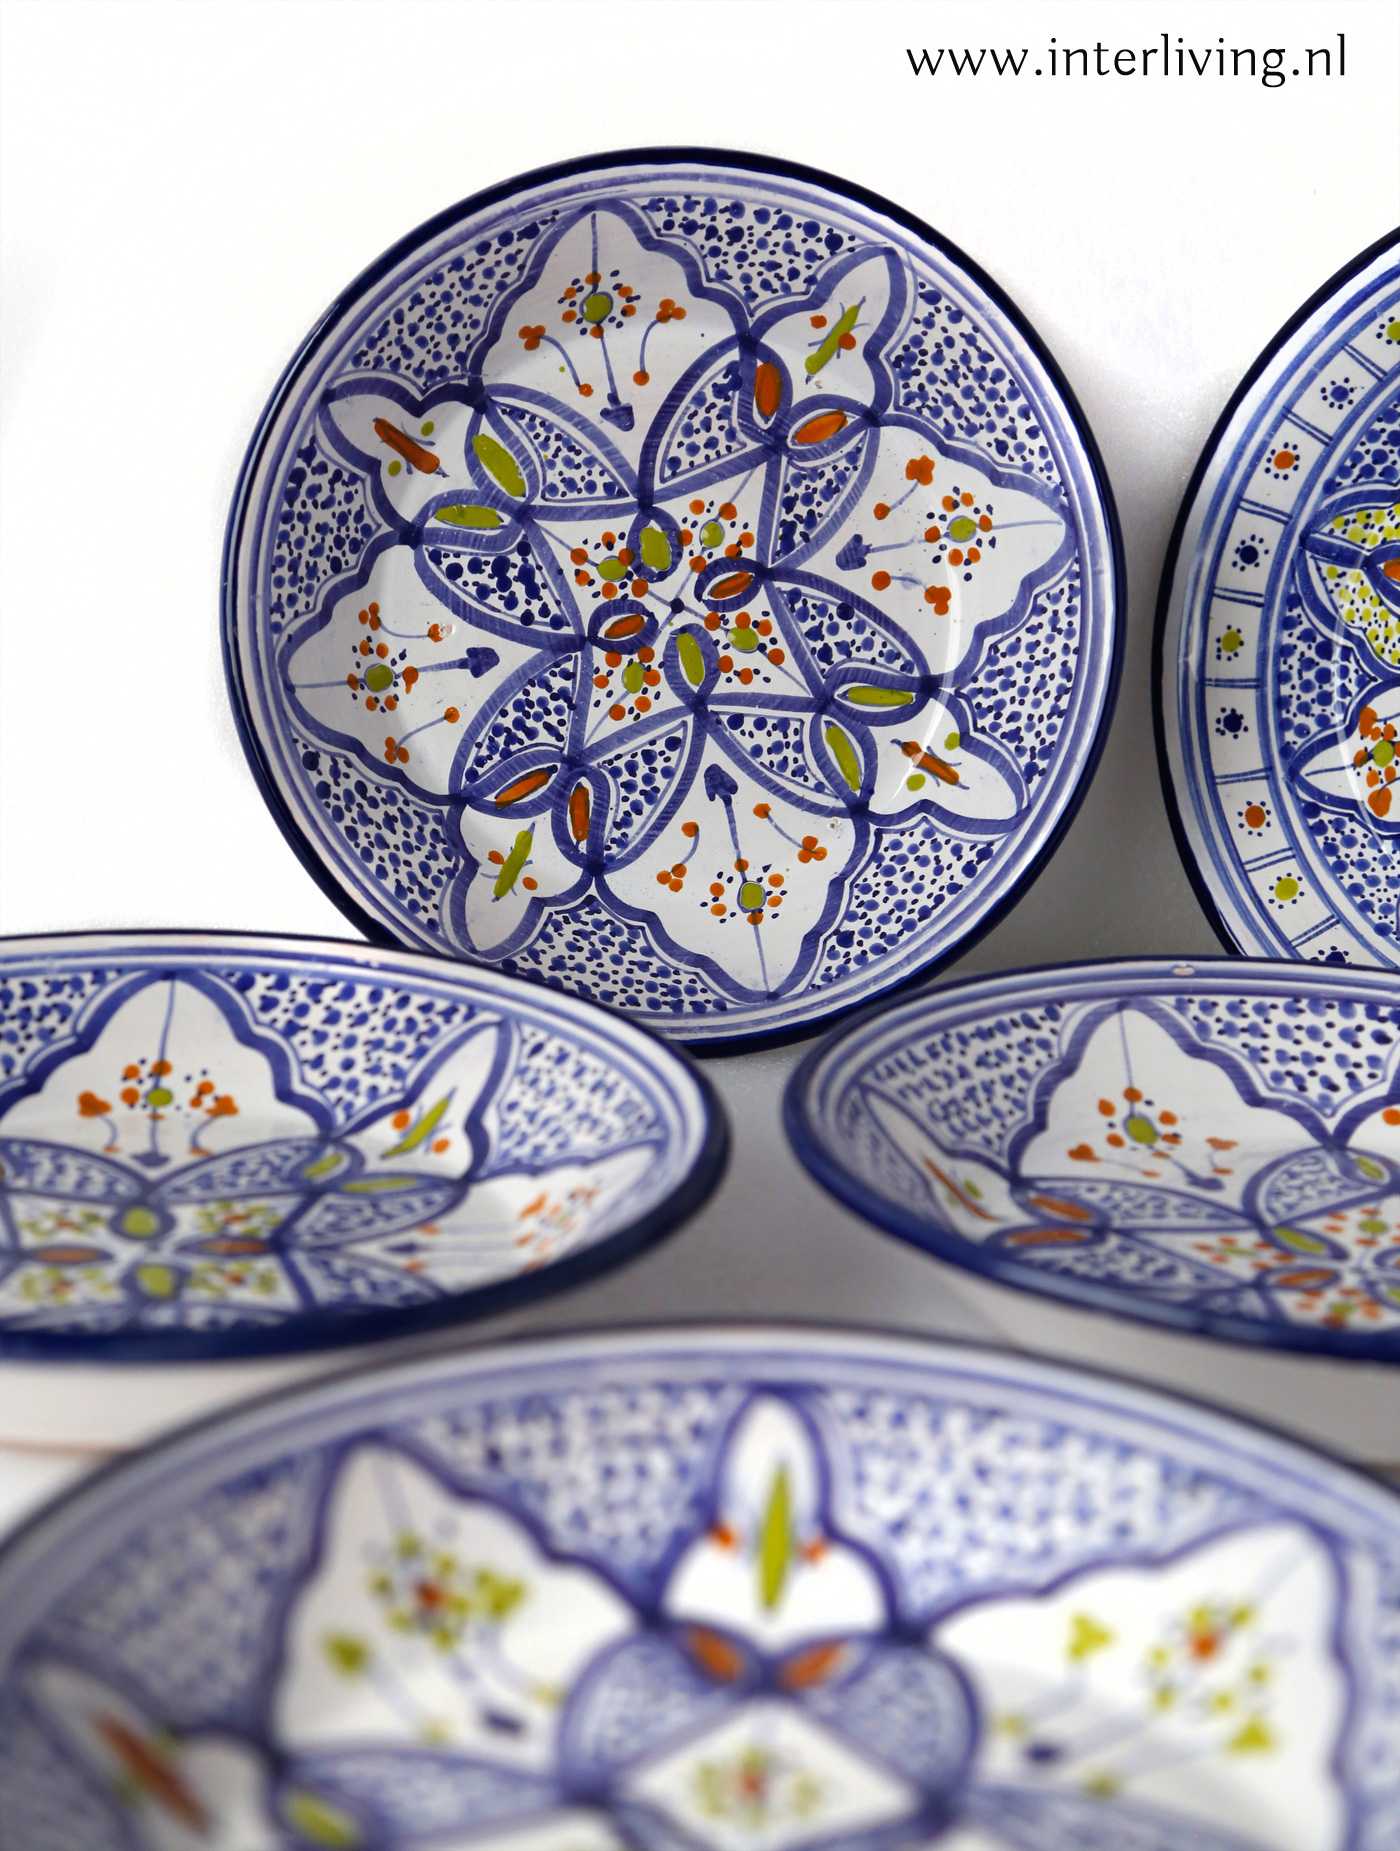 Top Trunk bibliotheek Heel boos Marokkaans bord van kleurrijk aardewerk met Arabische patronen